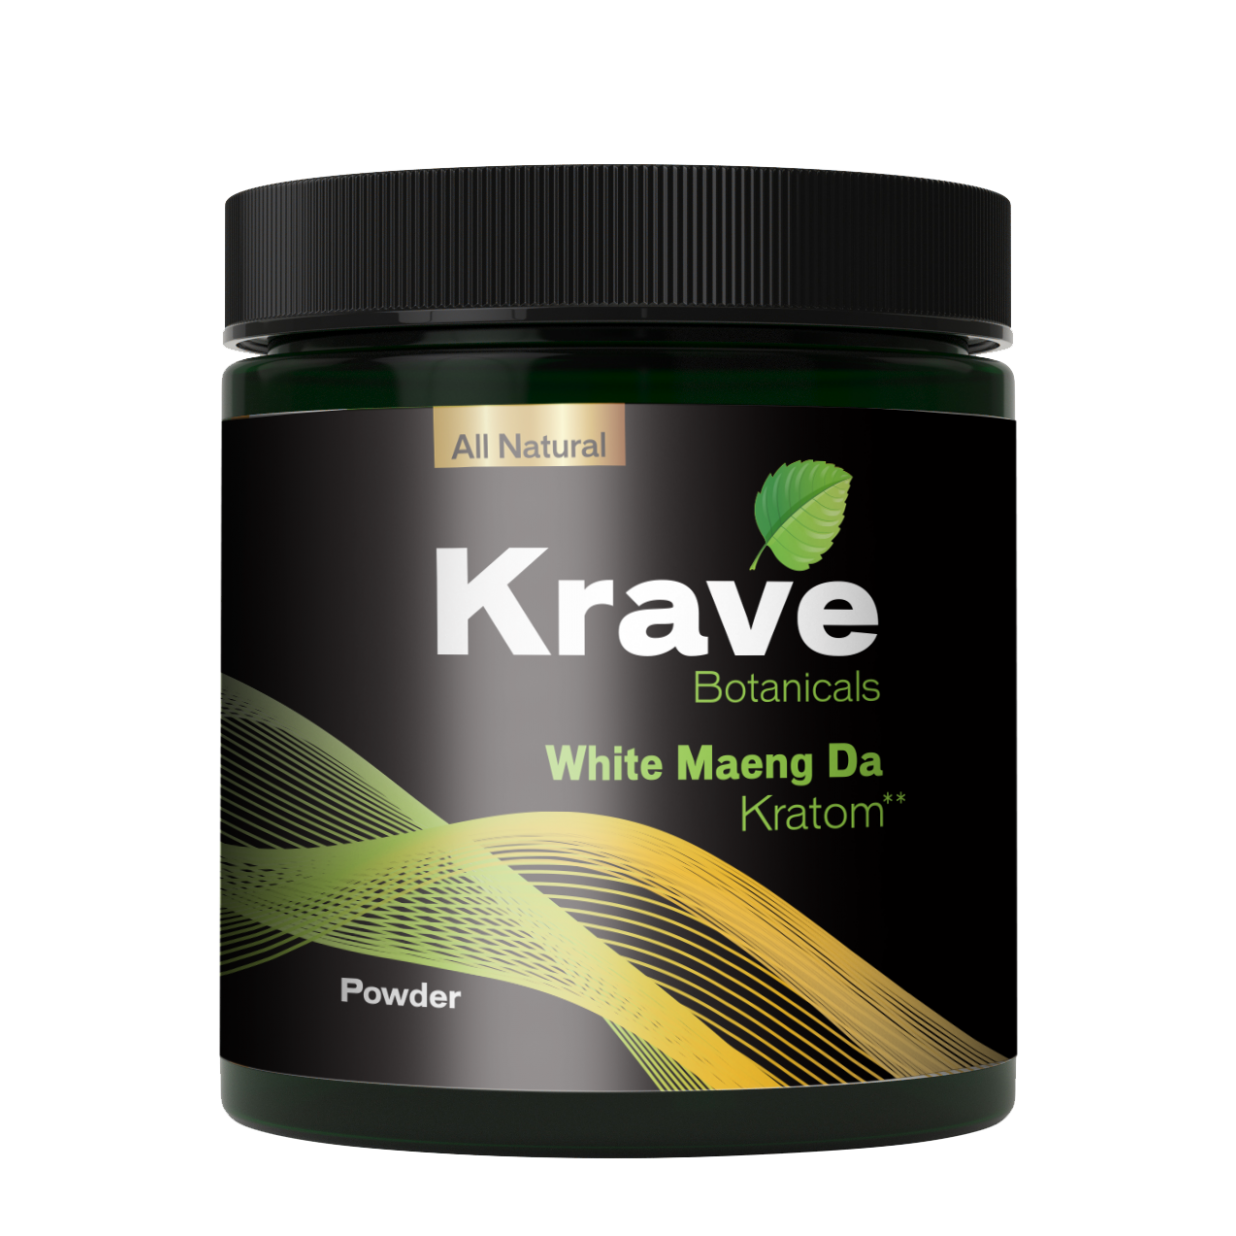 White Maeng Da Kratom - Buy Premium Powder Online - Krave Kratom.